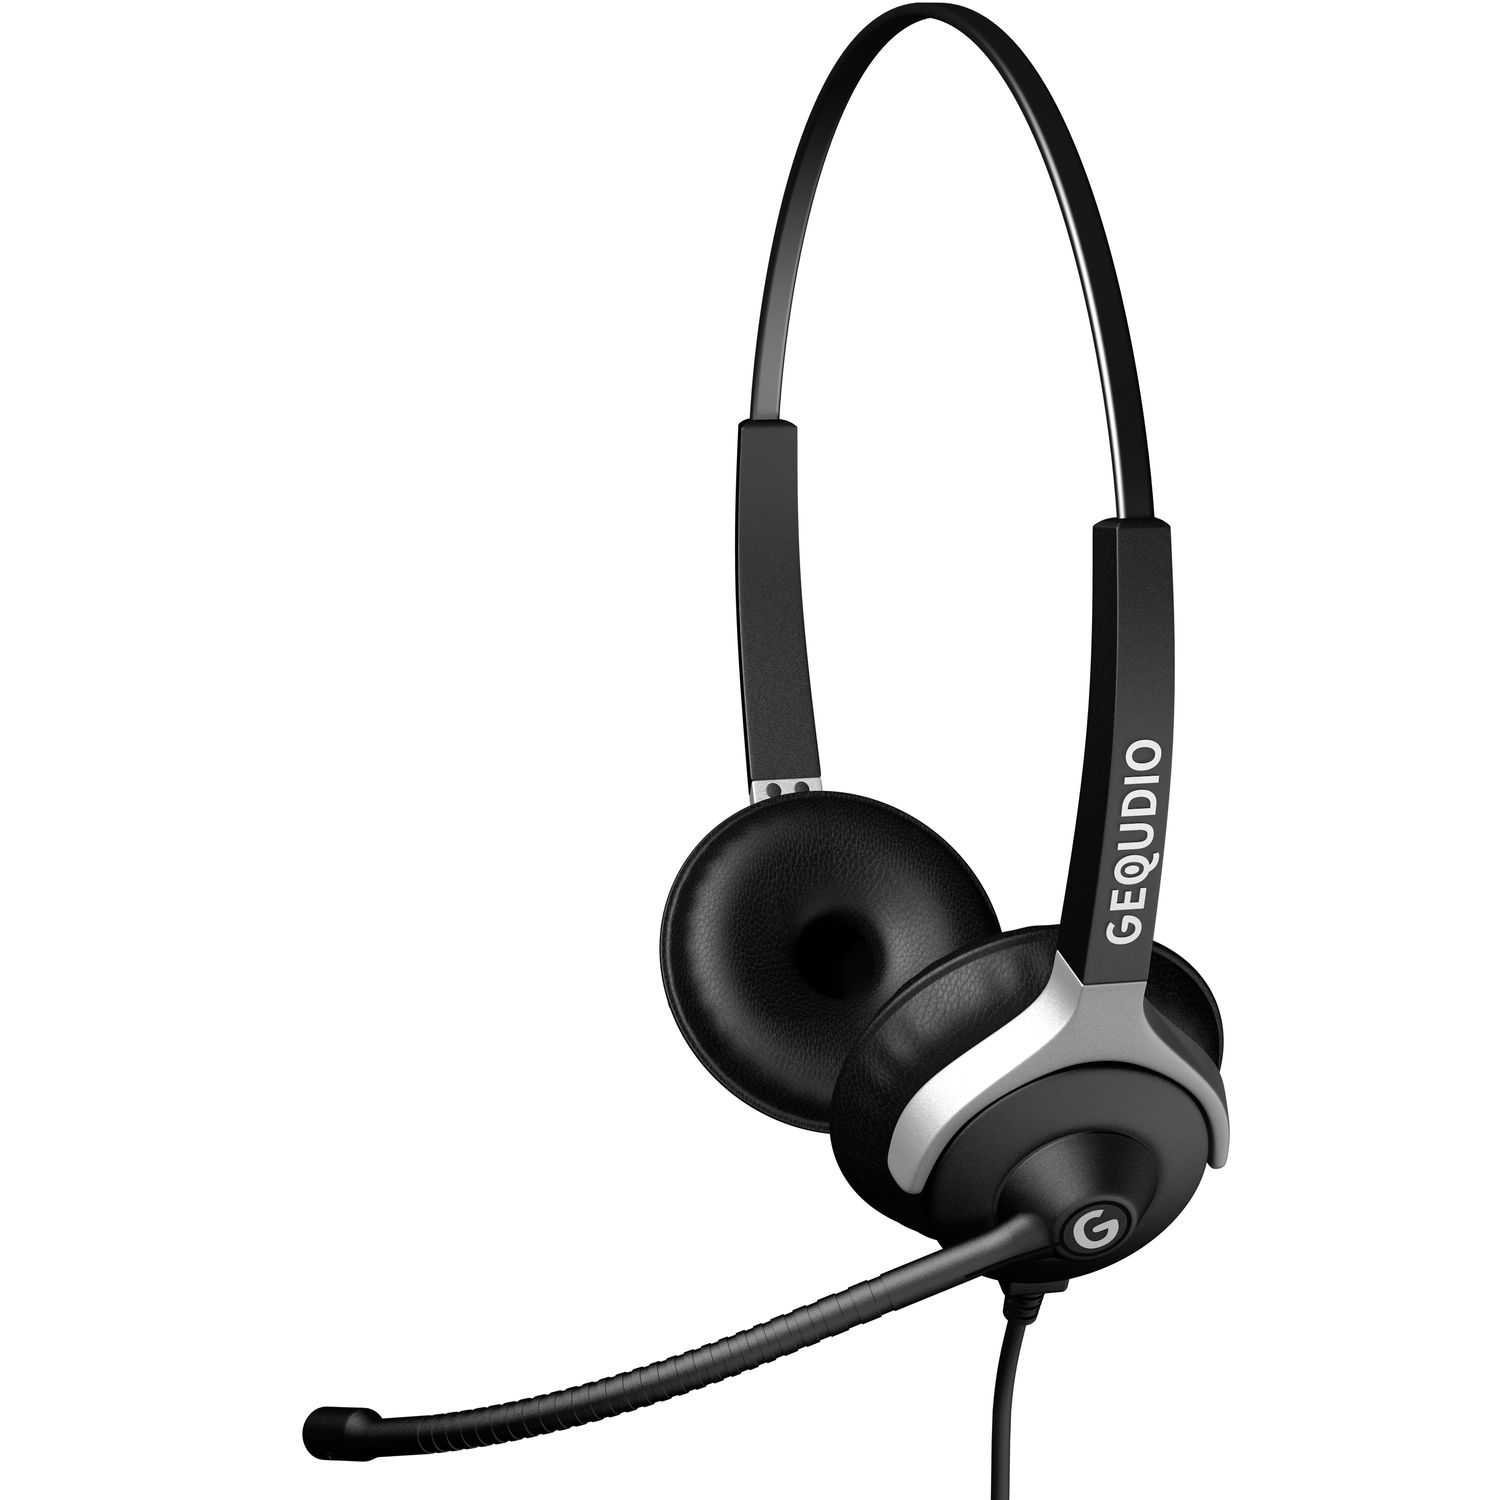 GEQUDIO Headset 2-Ohr Headset für On-ear Kabel, Mitel/Aastra/Poly/Gigaset-RJ mit Schwarz